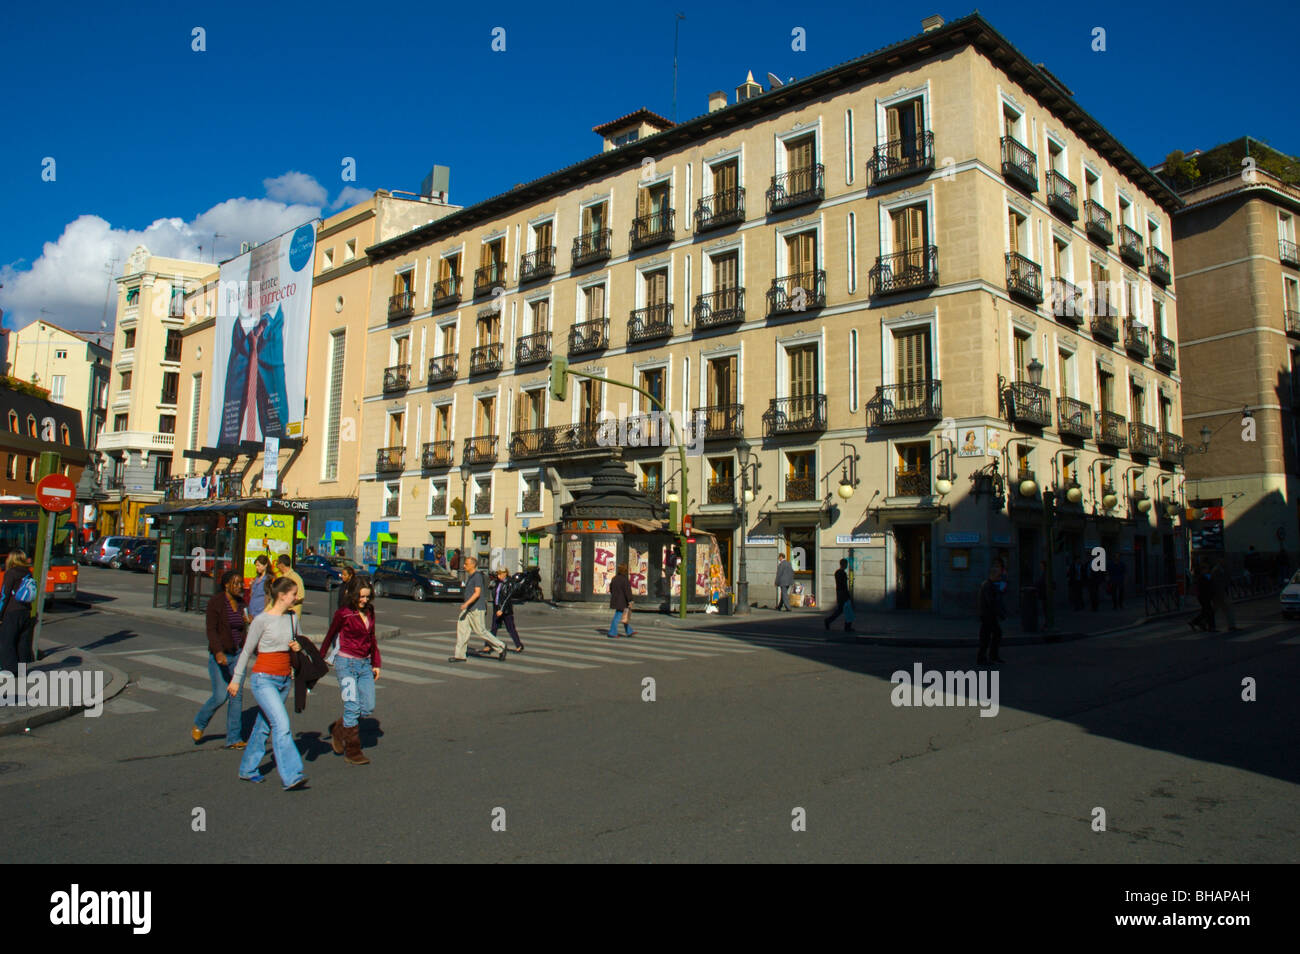 Scène de rue quartier Huertas, Madrid Espagne Europe centrale Banque D'Images